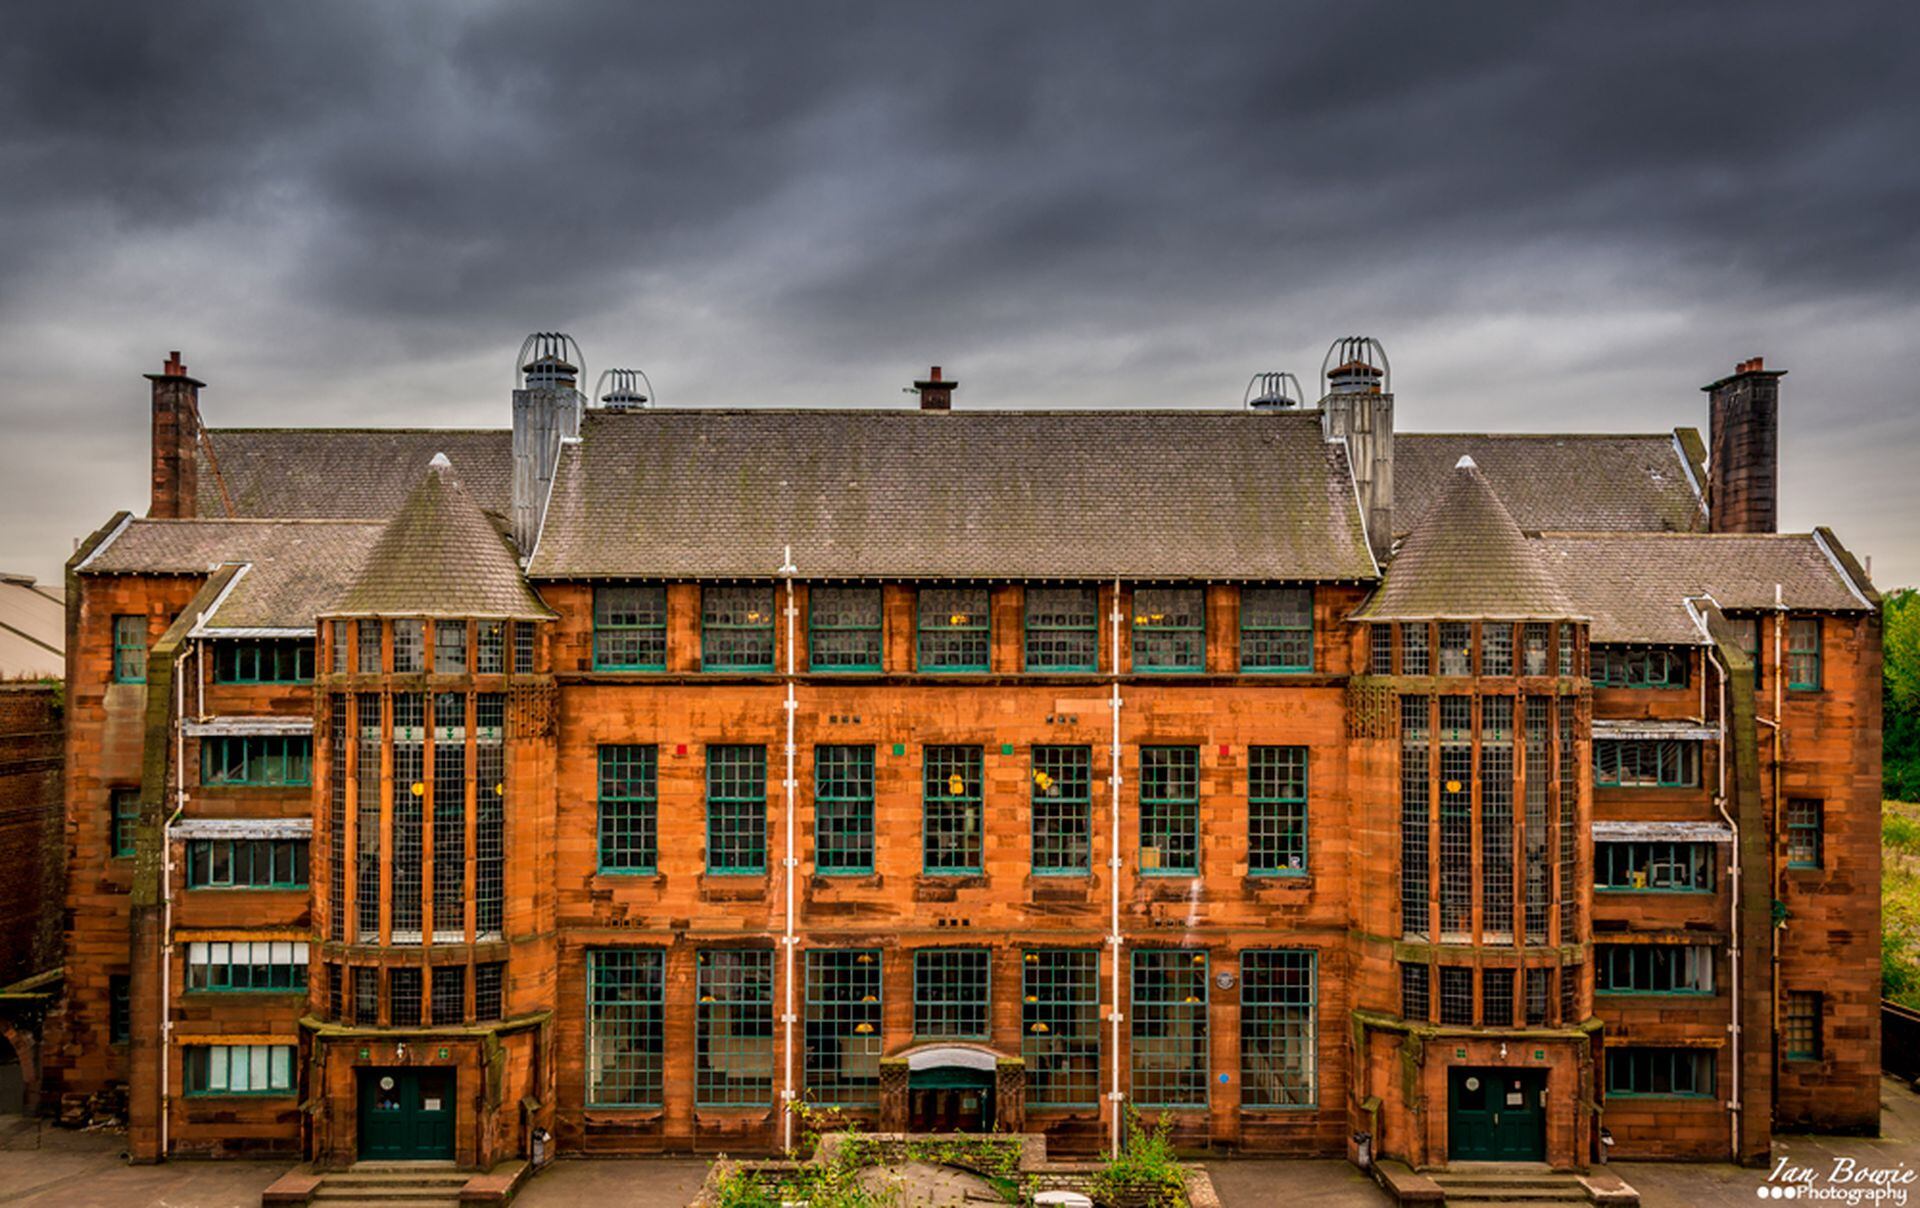 Scotland School Street Museum, antes una escuela primaria, hoy funciona como museo de la educación escocesa.